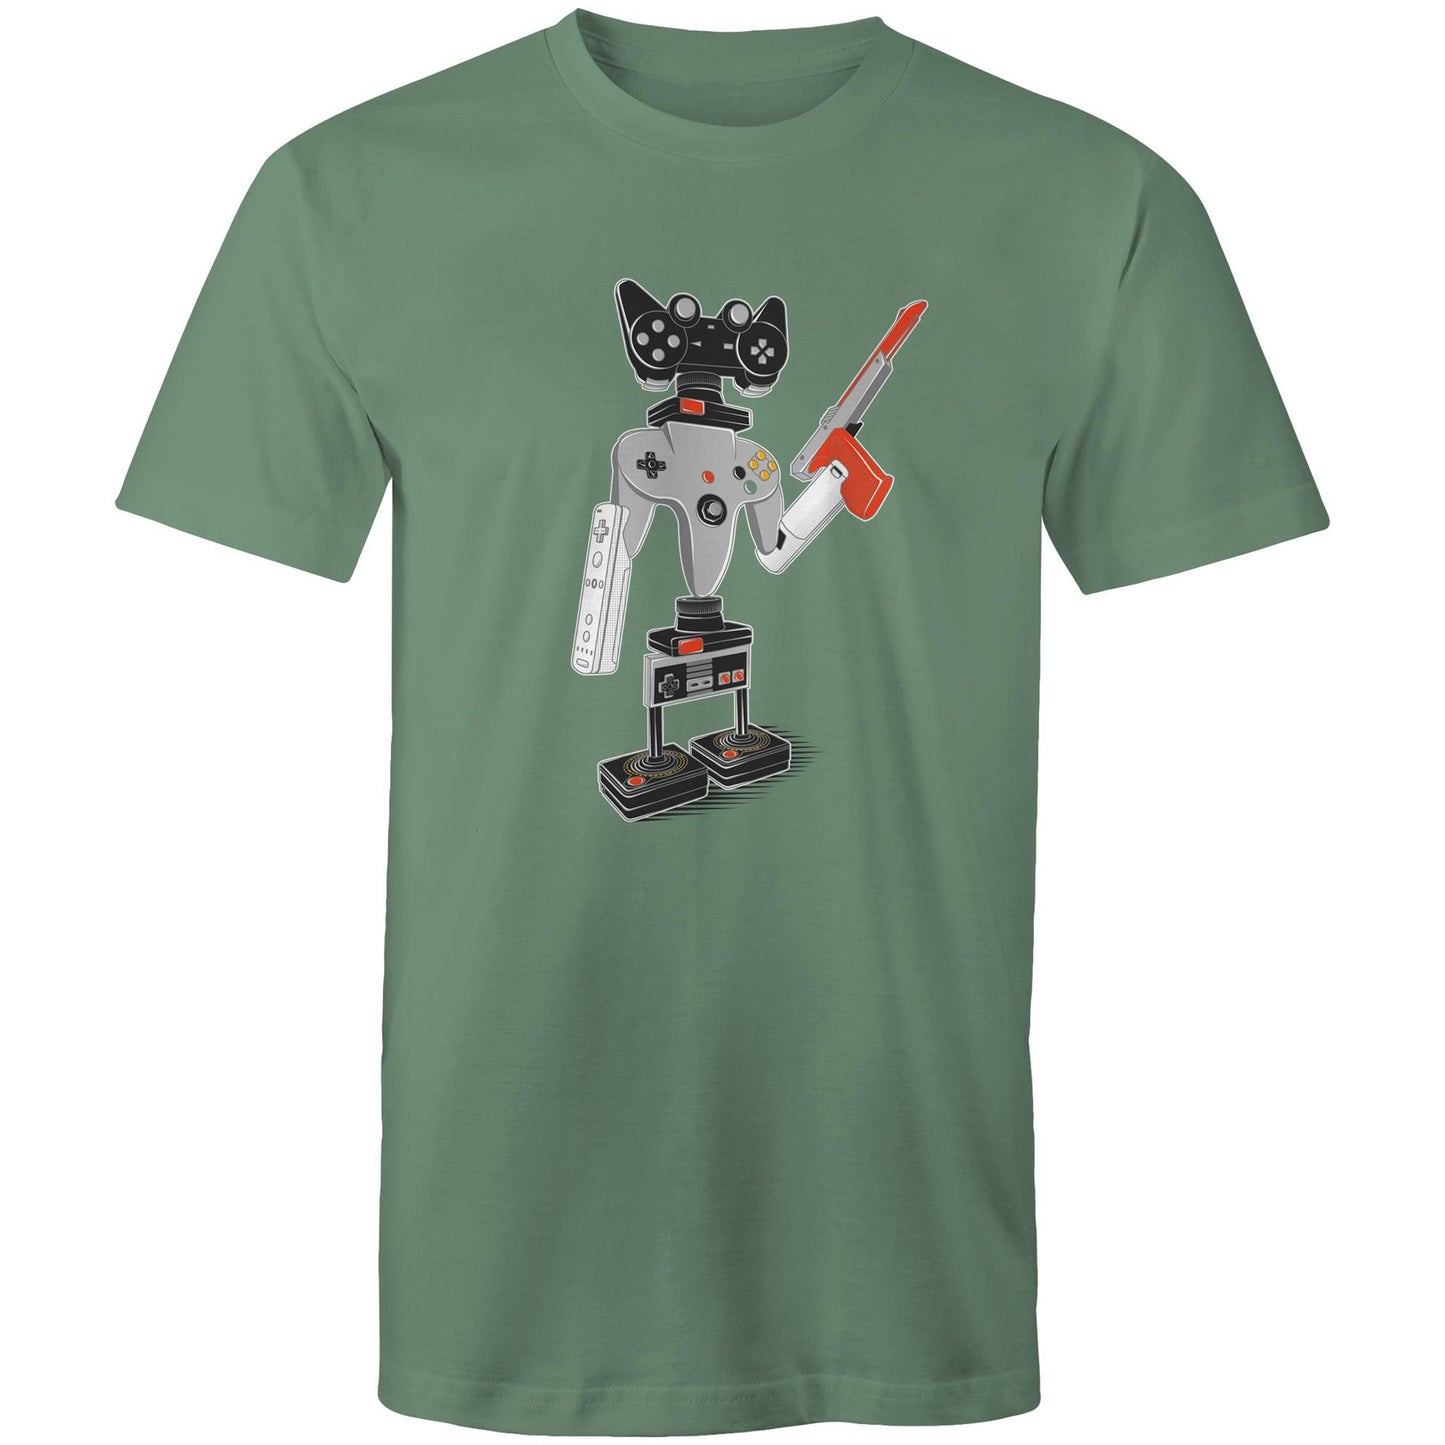 ControllerBot 4000 - Mens T-Shirt